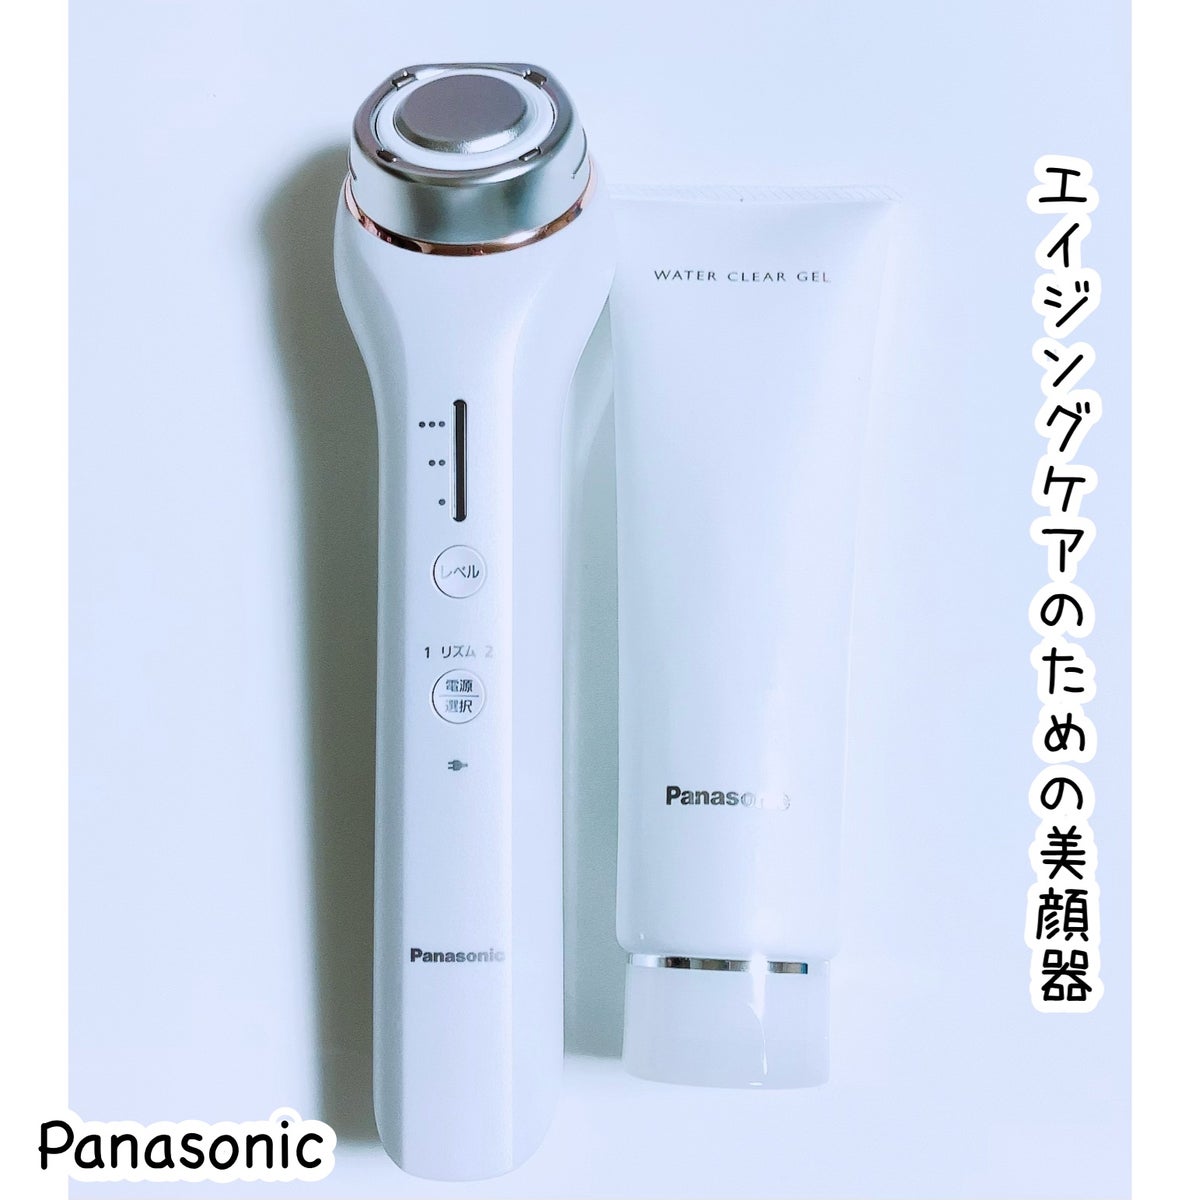 試してみた】RF美容器 EH-SR71 / Panasonicのリアルな口コミ・レビュー 